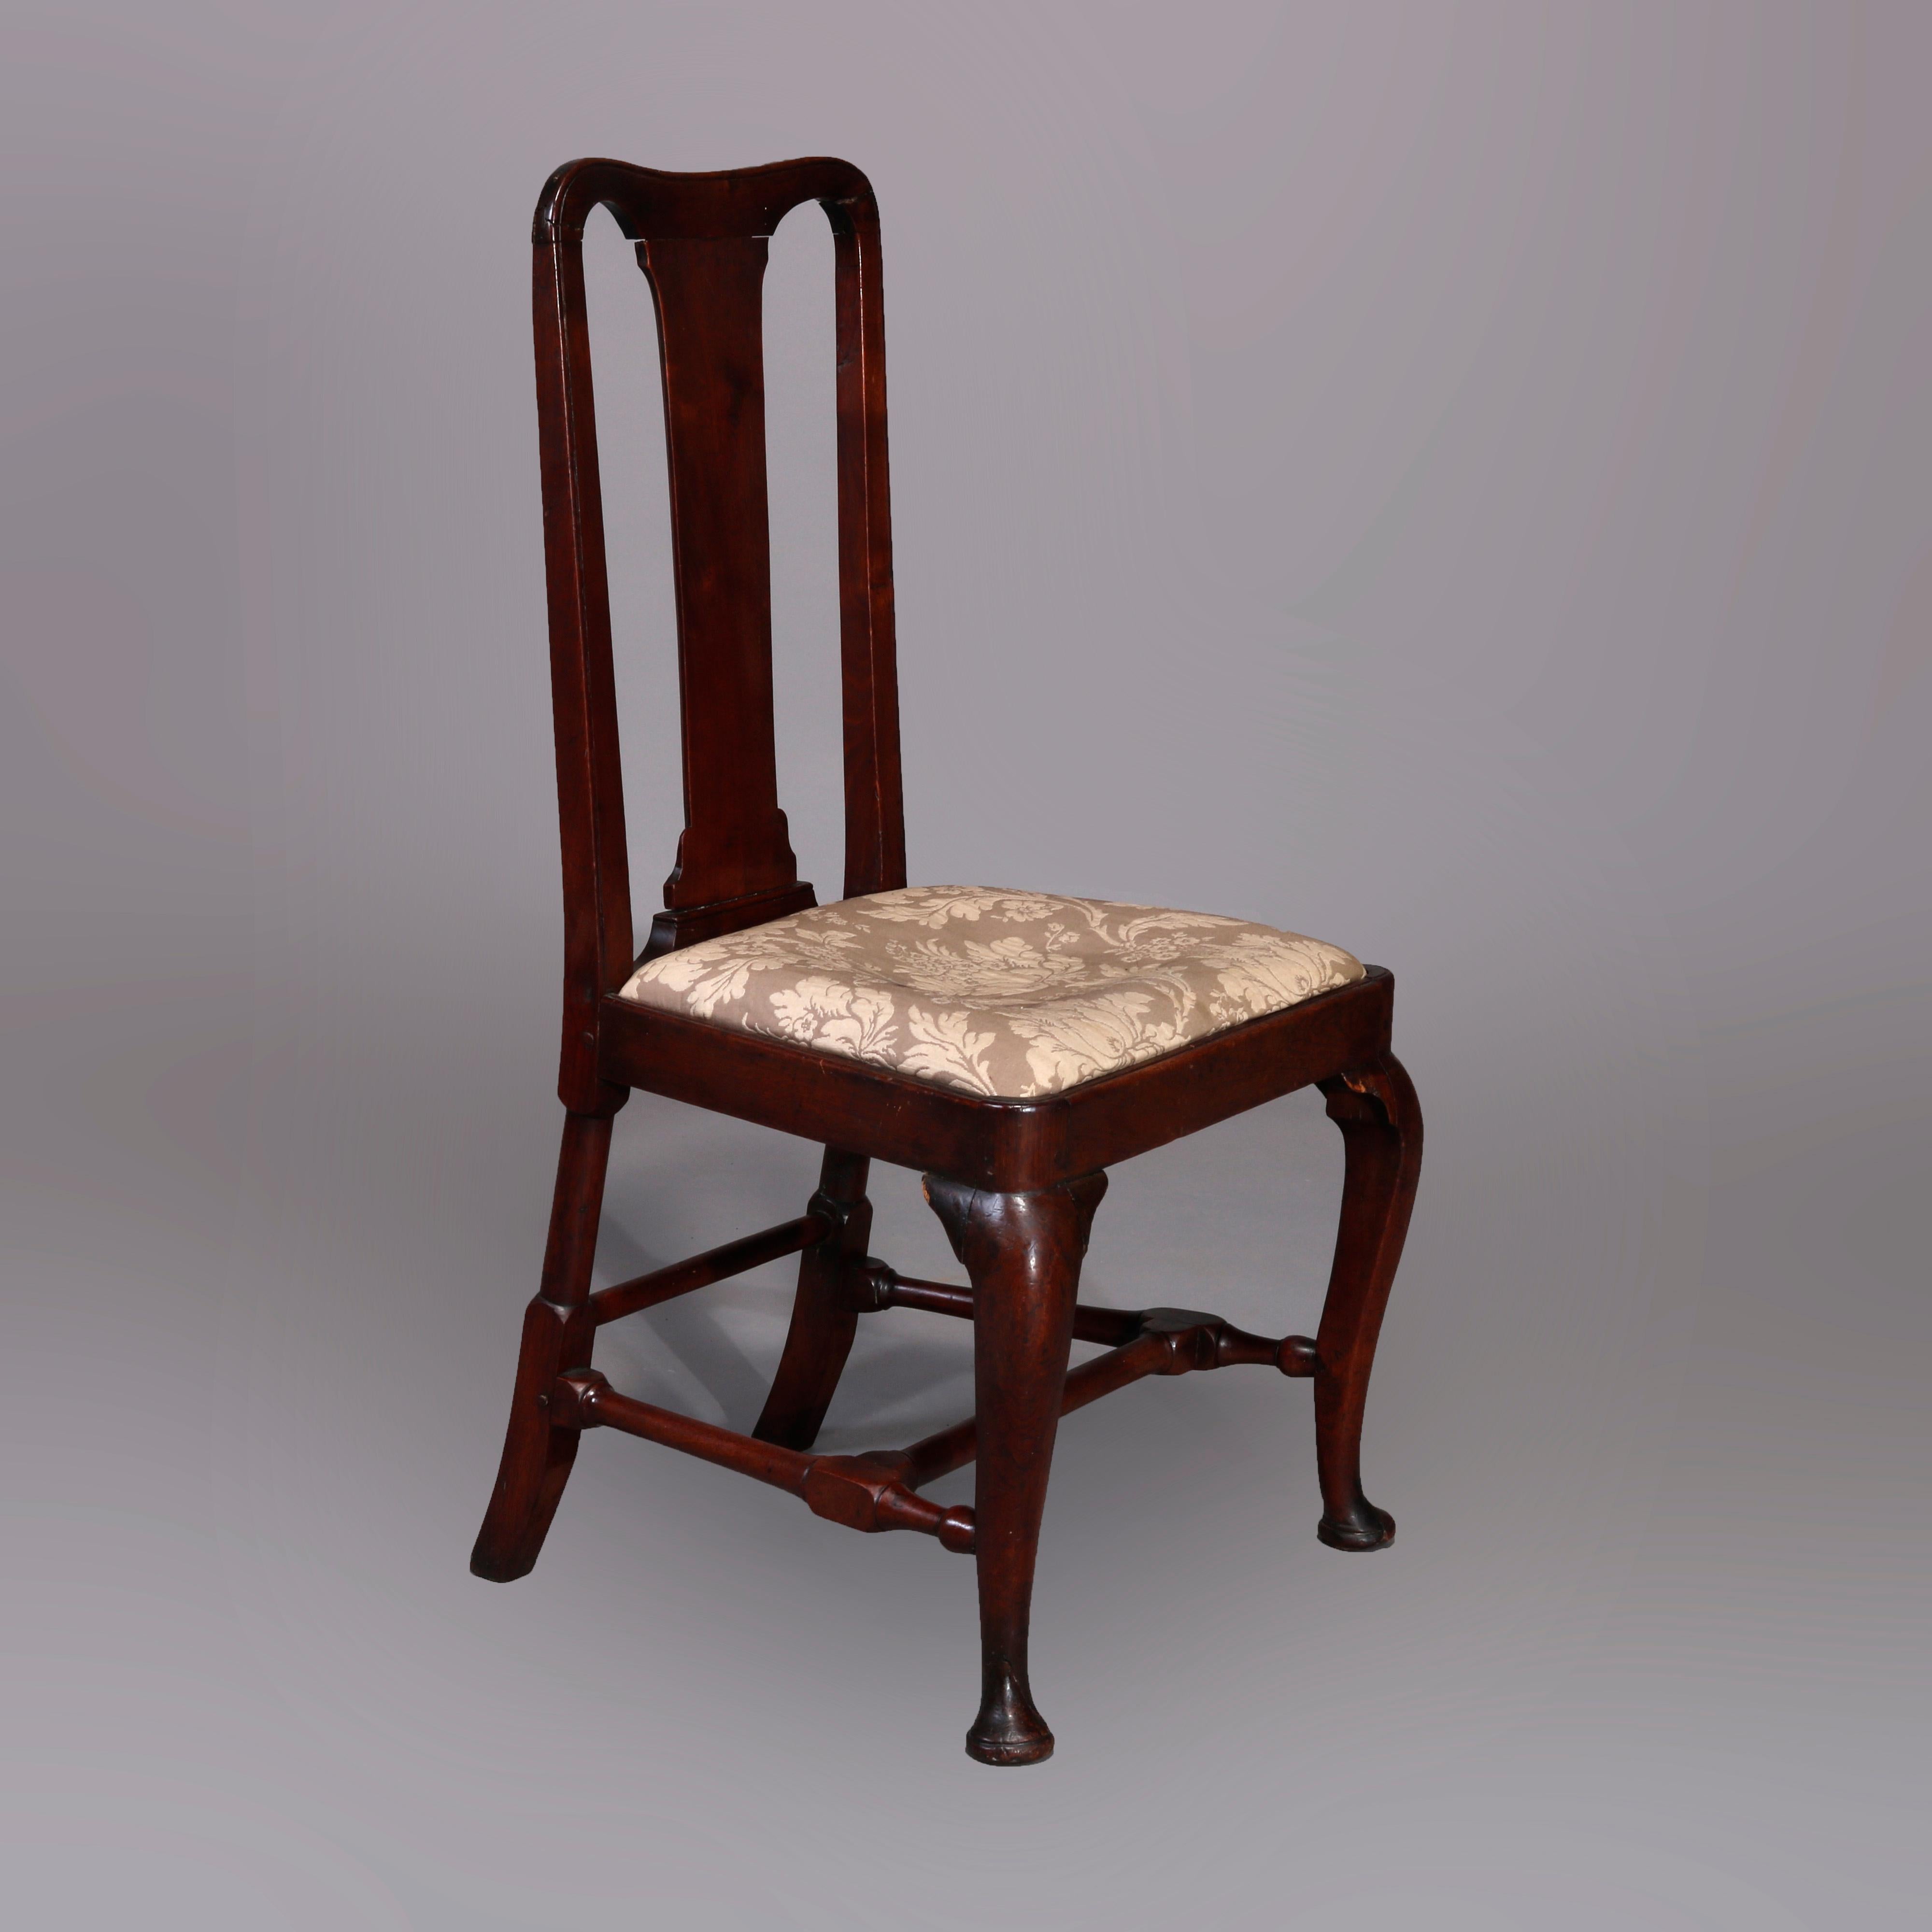 Ein antikes Paar Queen Anne Beistellstühle aus Neuengland bietet eine geschnitzte Mahagonikonstruktion mit Lattenrücken, gepolsterte Sitze, erhöht auf Cabriole-Beinen mit pad-Füßen, um 1760

Maße: 1. Stuhl 38,25